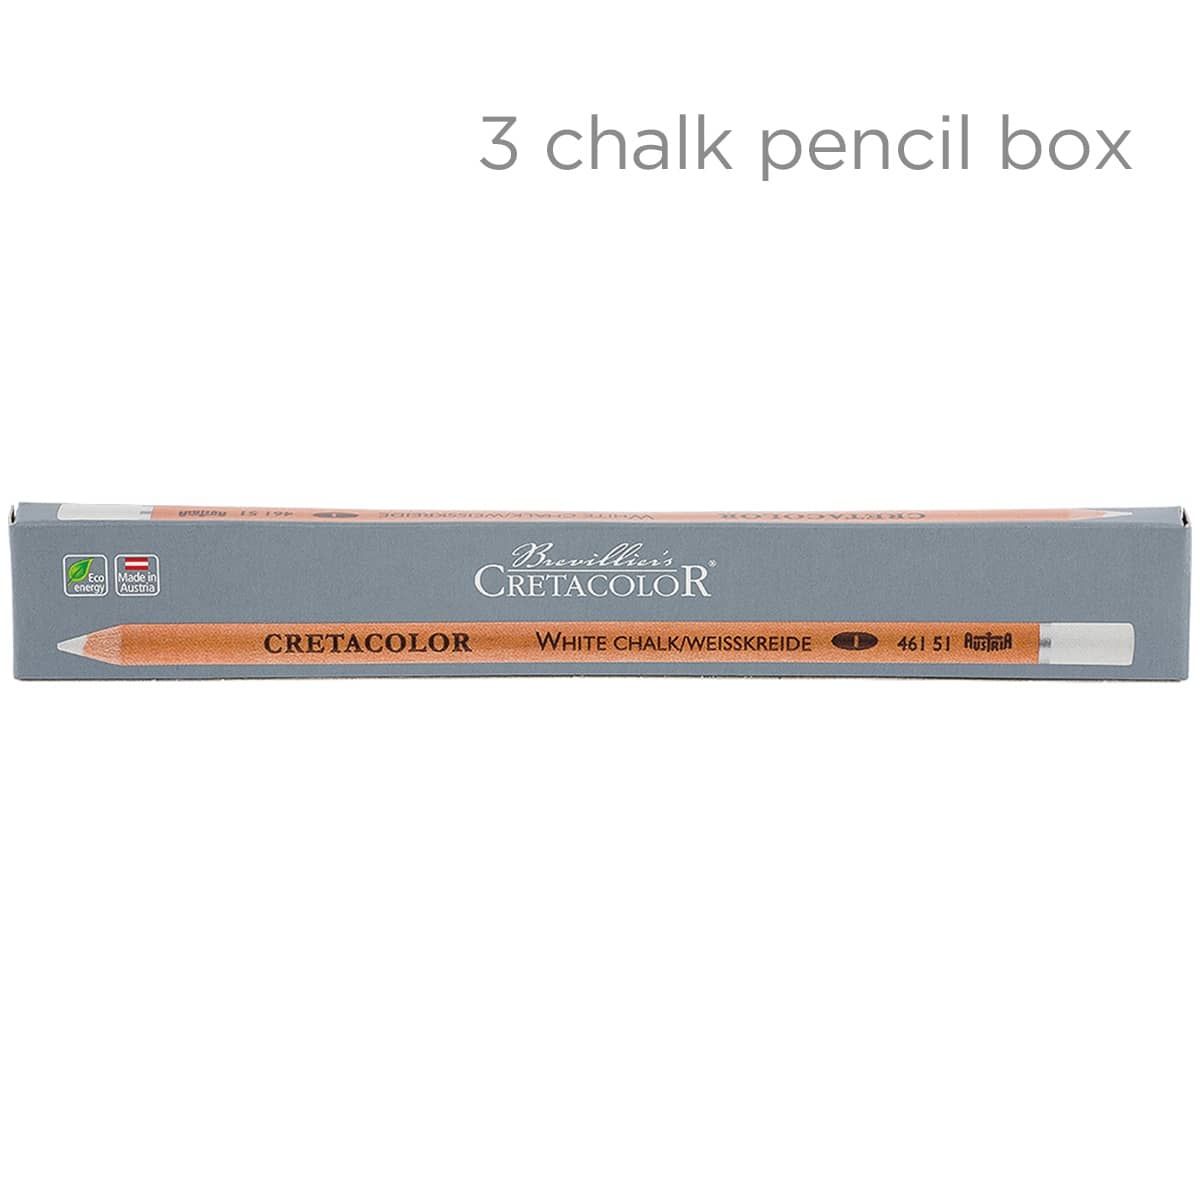 Cretacolor Chalk Pencil 3 Pack Box White Soft